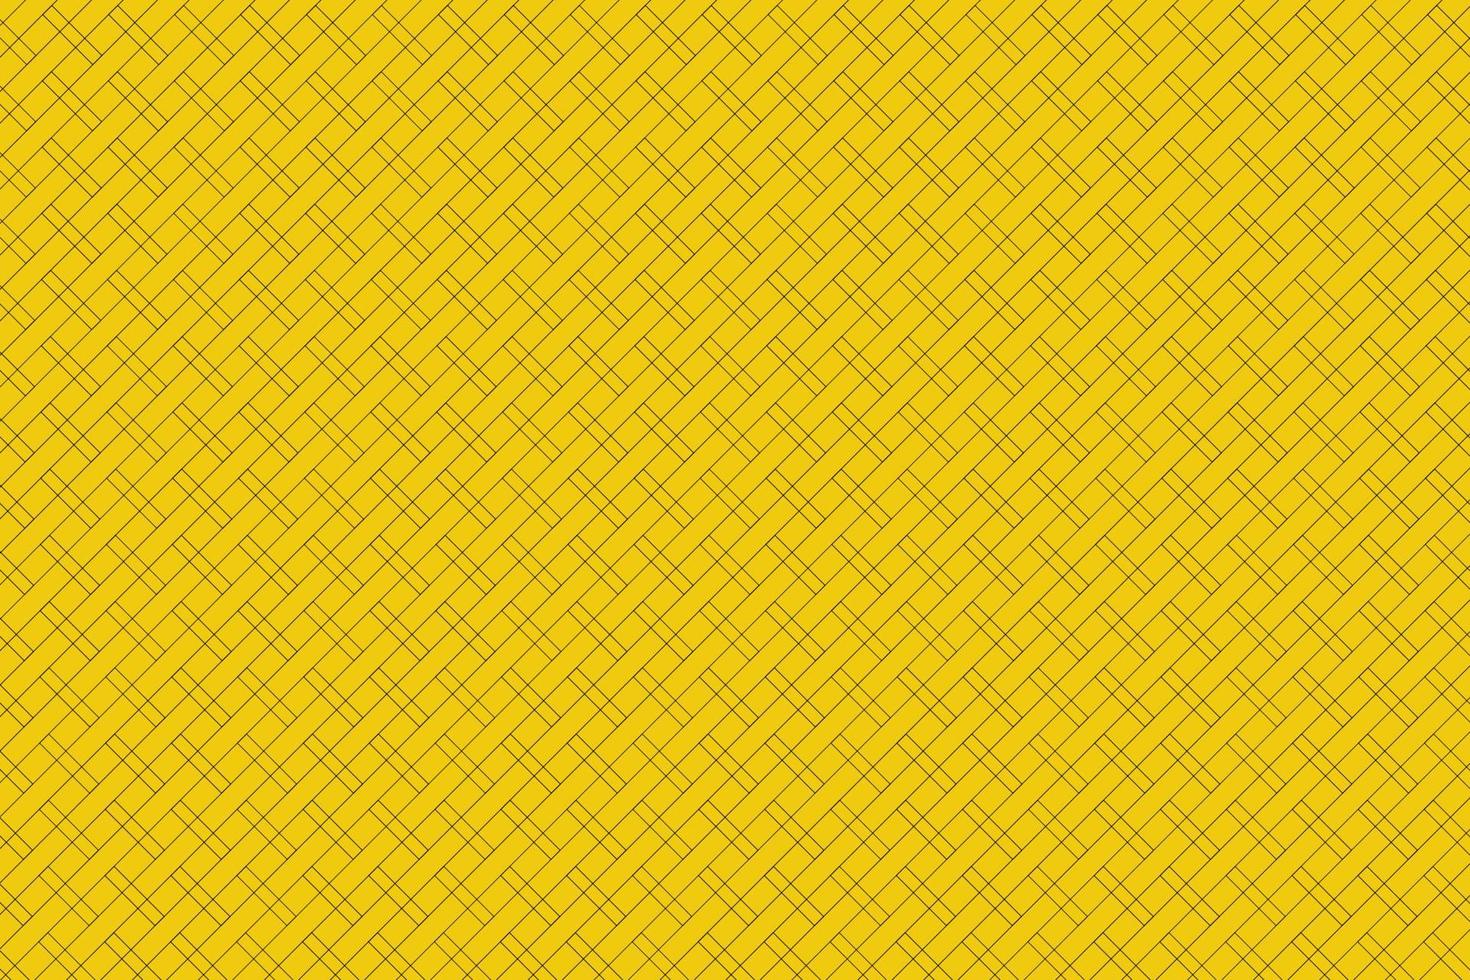 gelber Hintergrund schwarze Streifen schneiden sich in gleichgroße Kanäle können verwendet werden, um Arbeiten an Vektoren, Tapeten usw. zu entwerfen vektor